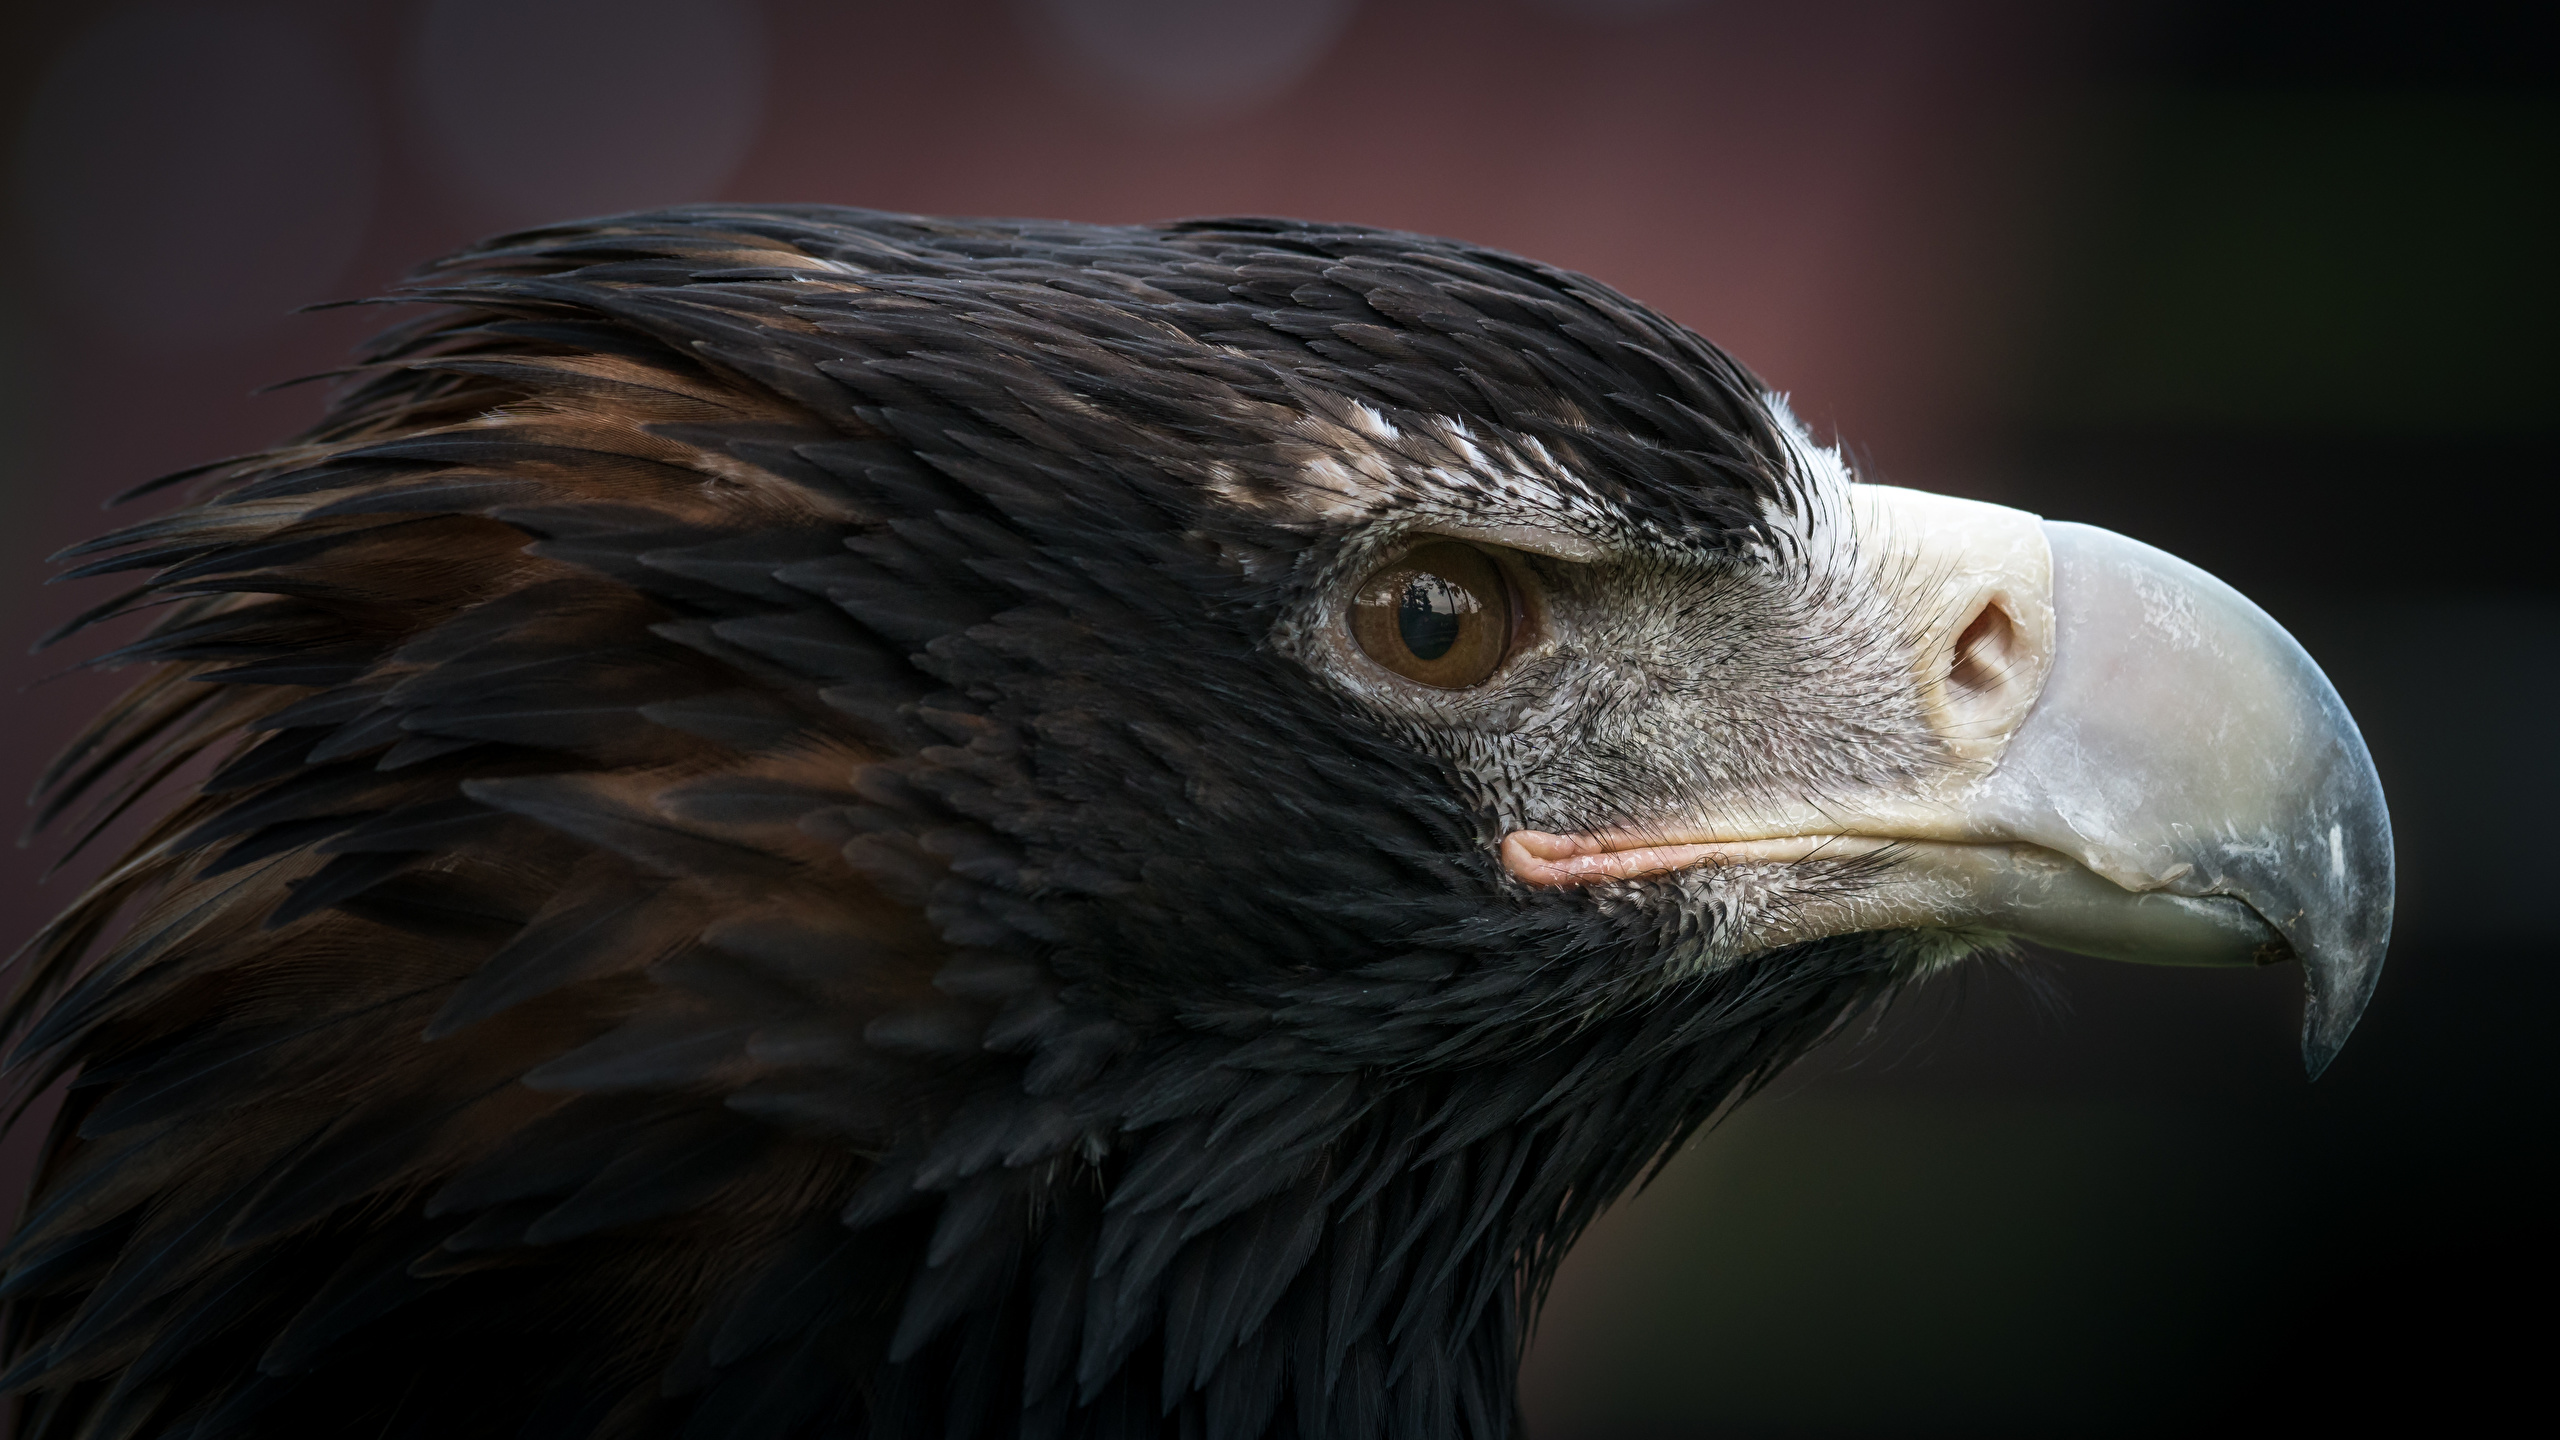 Фотография Орлы Птицы Клюв Голова Животные Крупным планом 2560x1440 орел птица вблизи головы животное